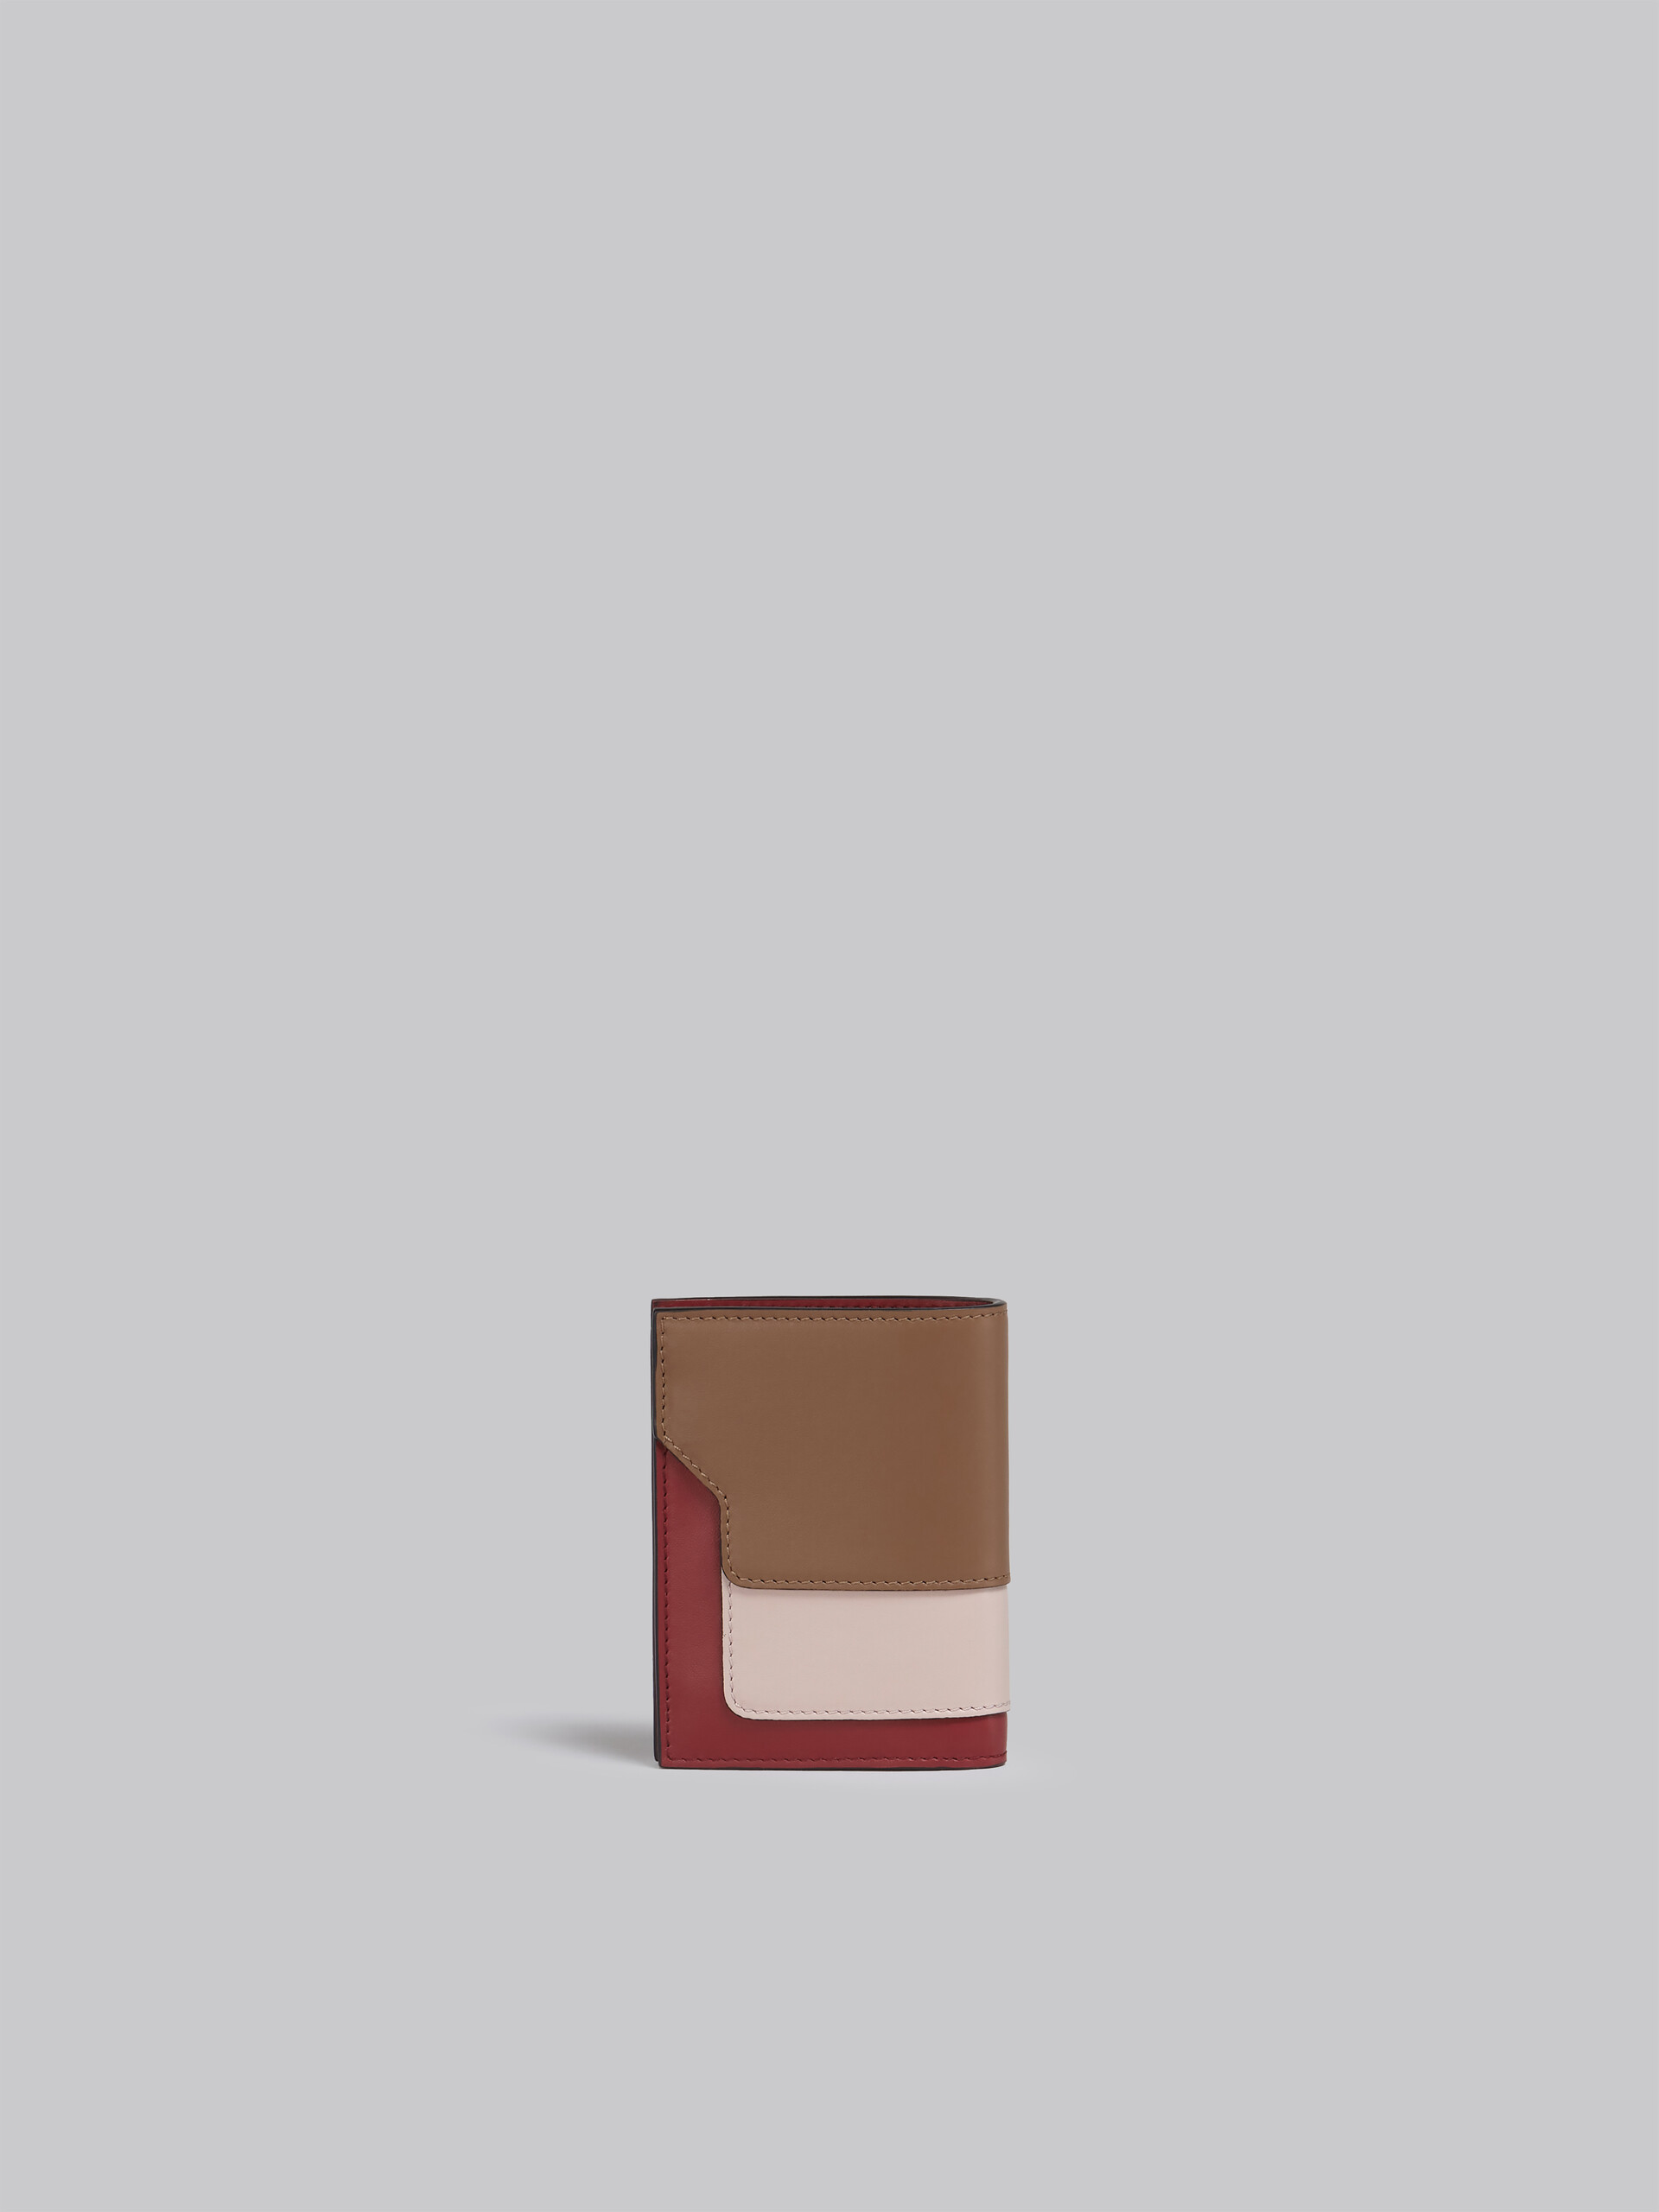 Portefeuille à deux volets en cuir saffiano marron, rose et bordeaux - Portefeuilles - Image 3